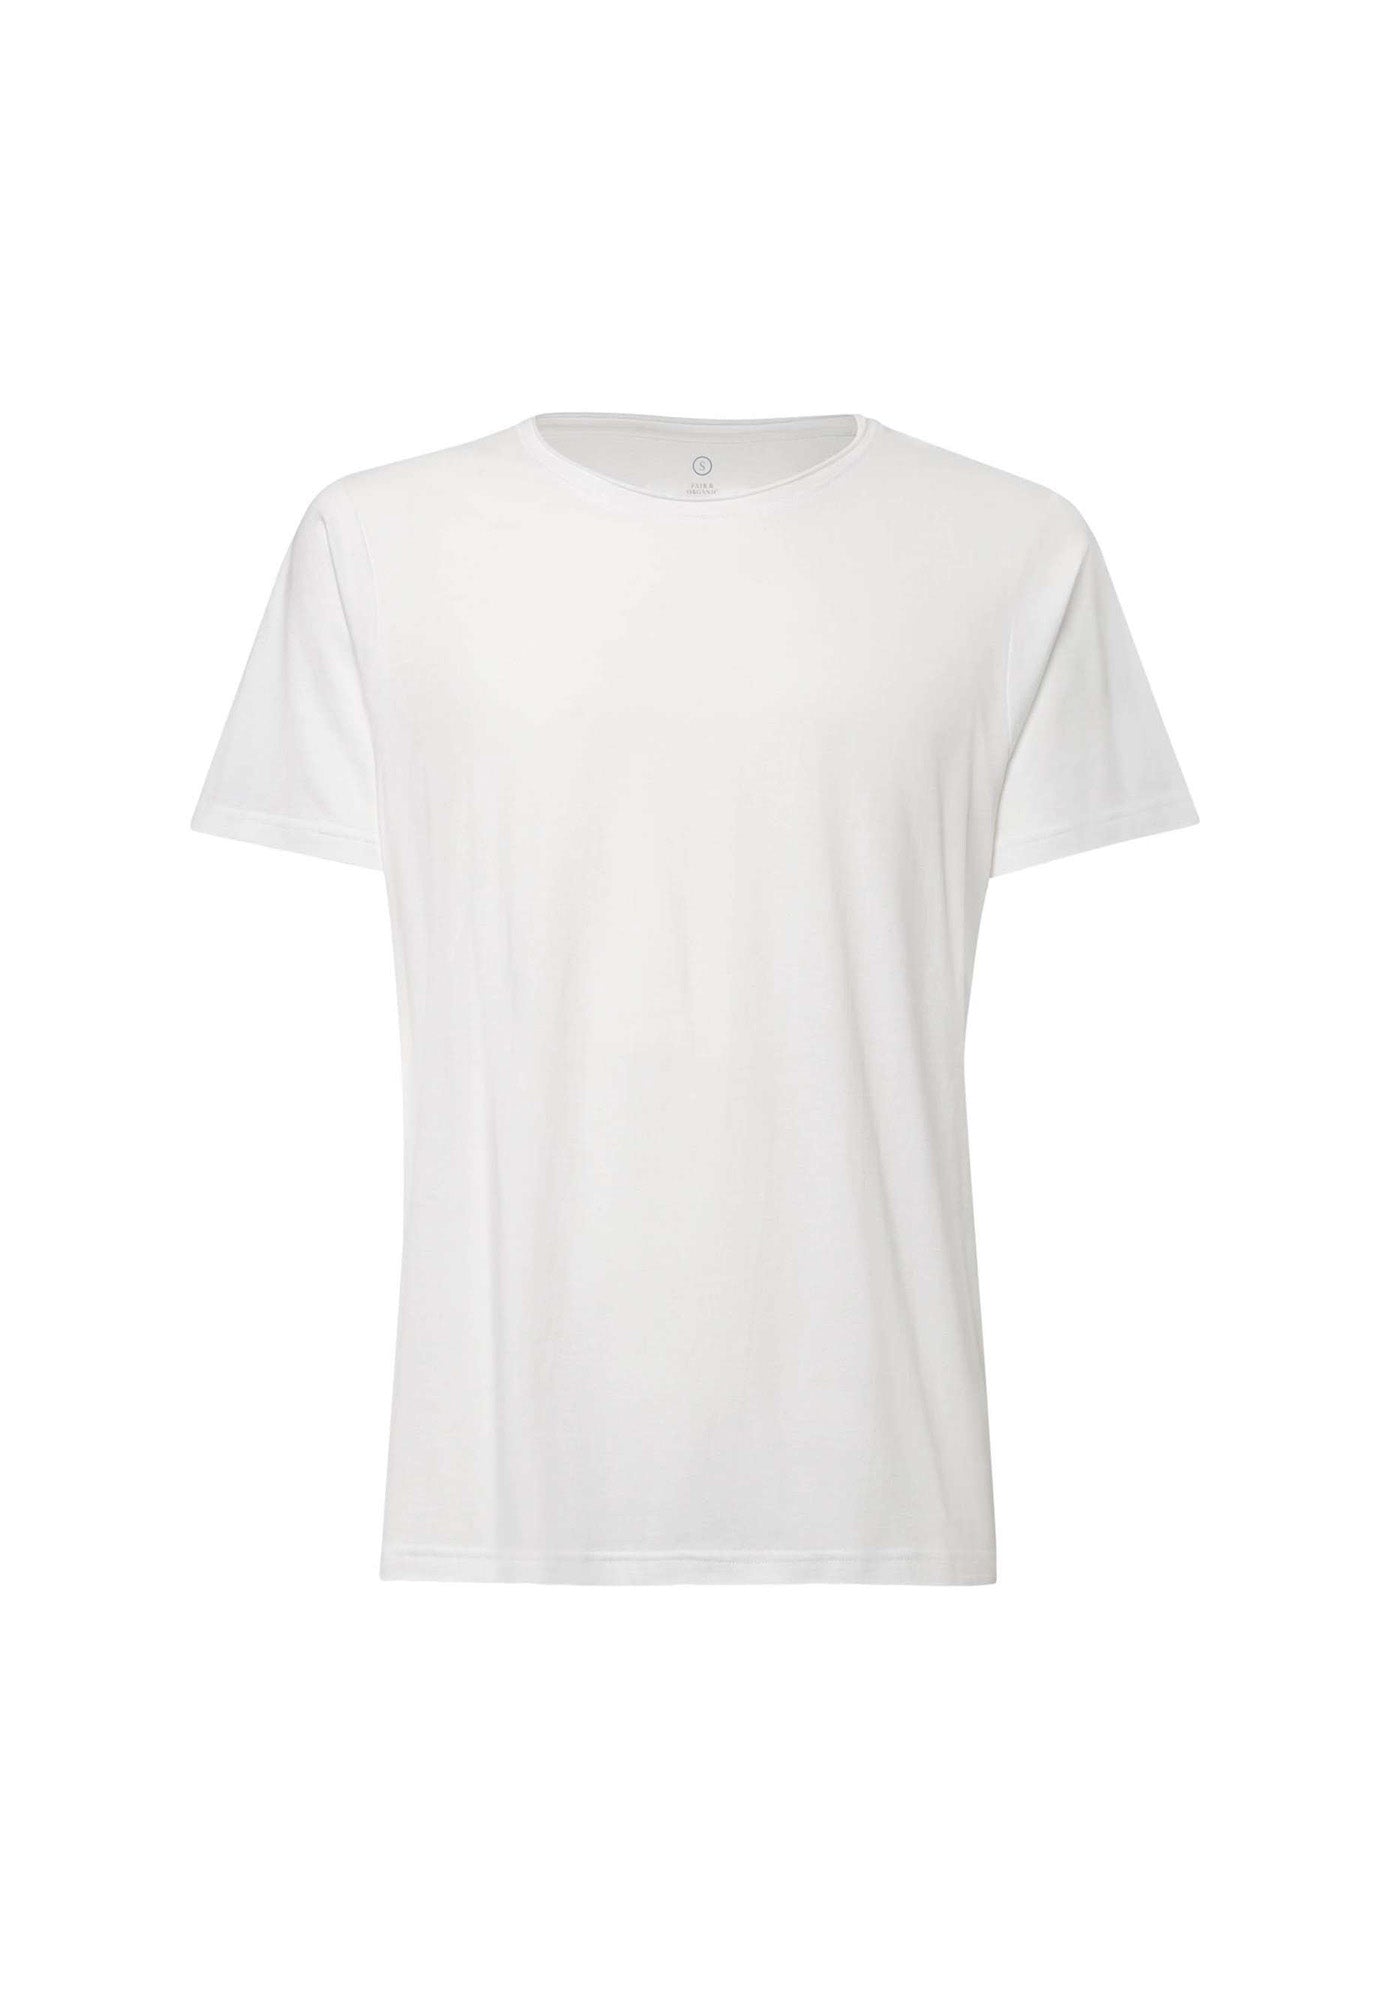 BTD65 T-Shirt White (GOTS)